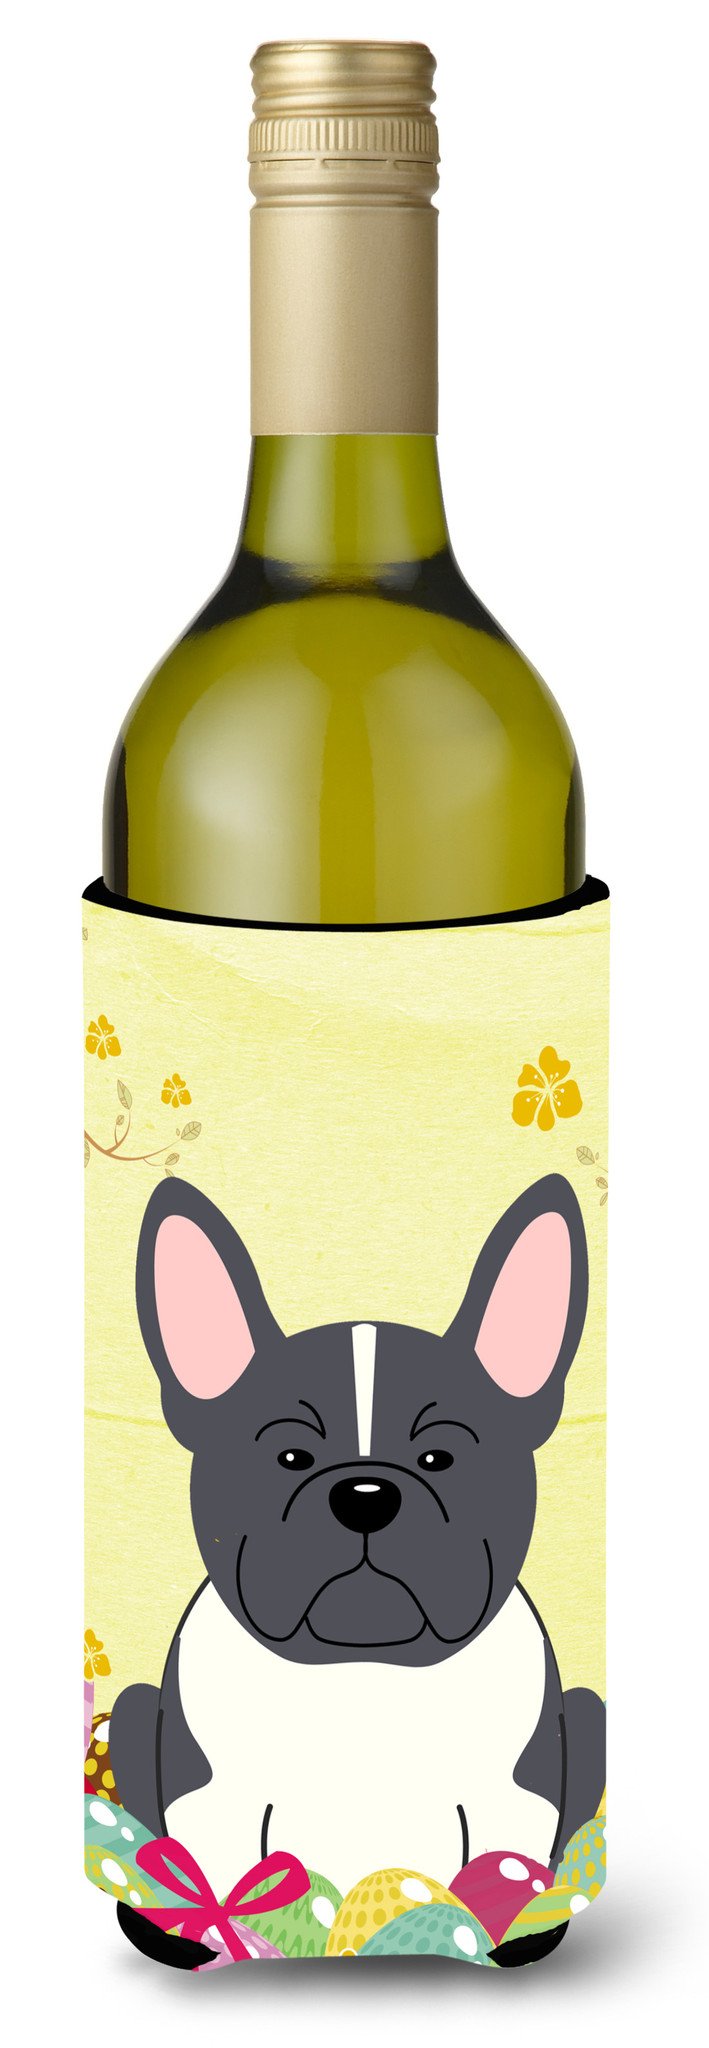 Easter Eggs French Bulldog Black White Wine Bottle Beverge Insulator Hugger BB6012LITERK by Caroline's Treasures